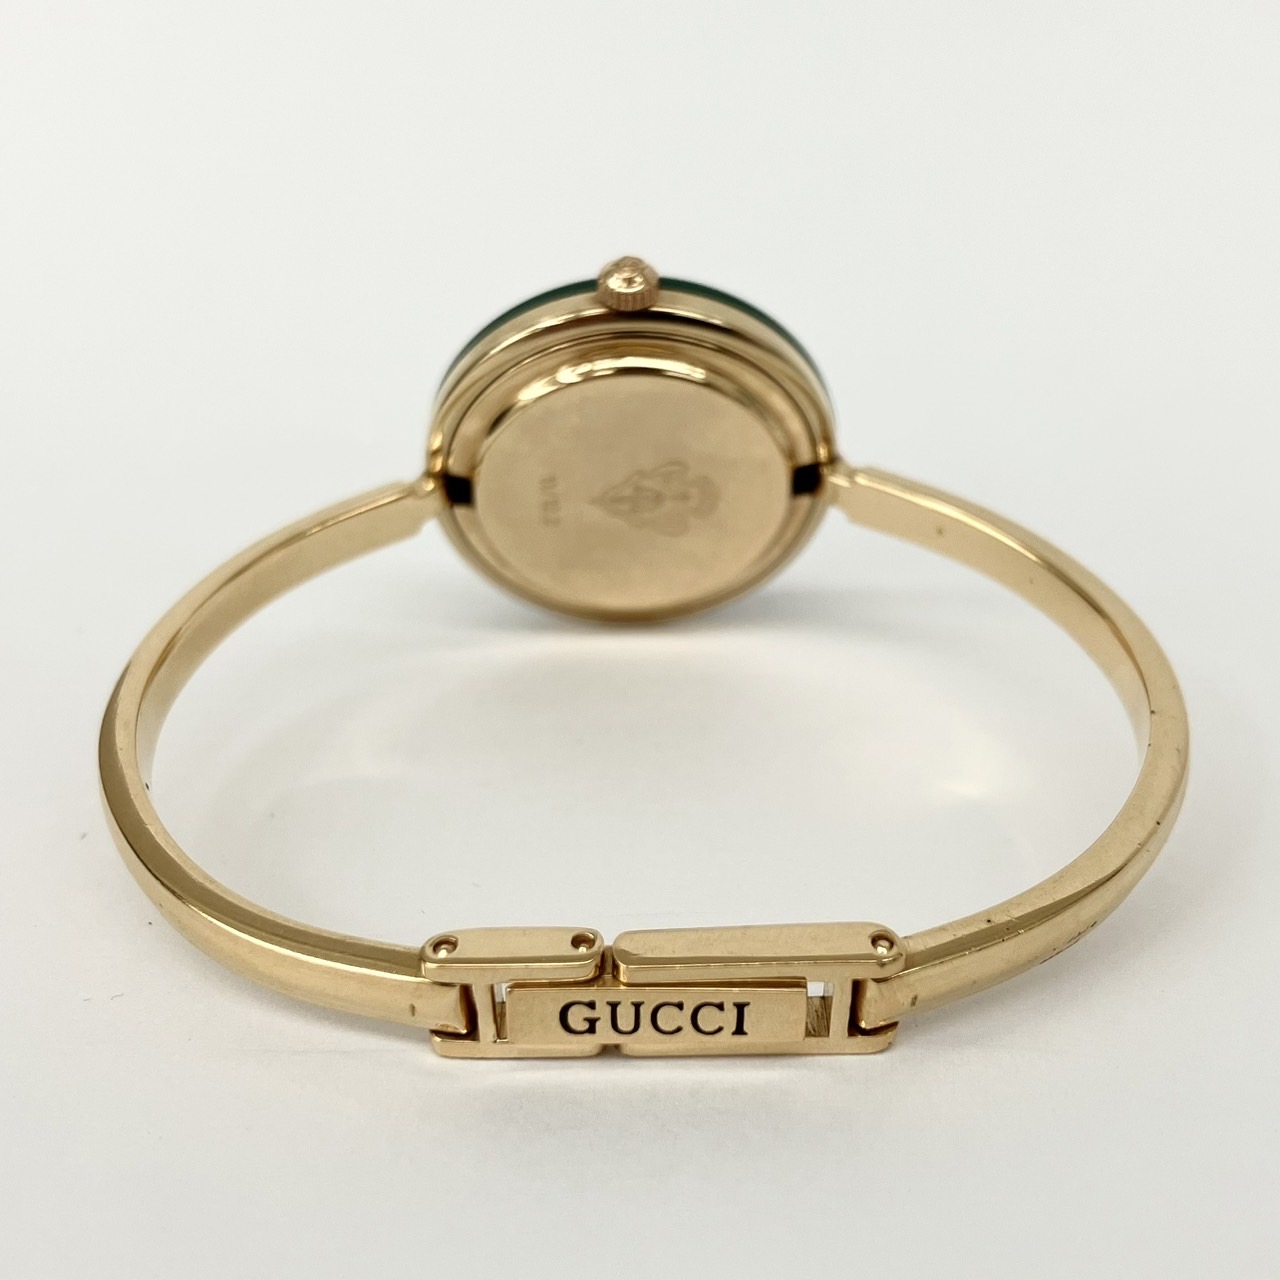 GUCCIグッチ色チェンジベゼル 腕時計の買取価格と査定のポイント